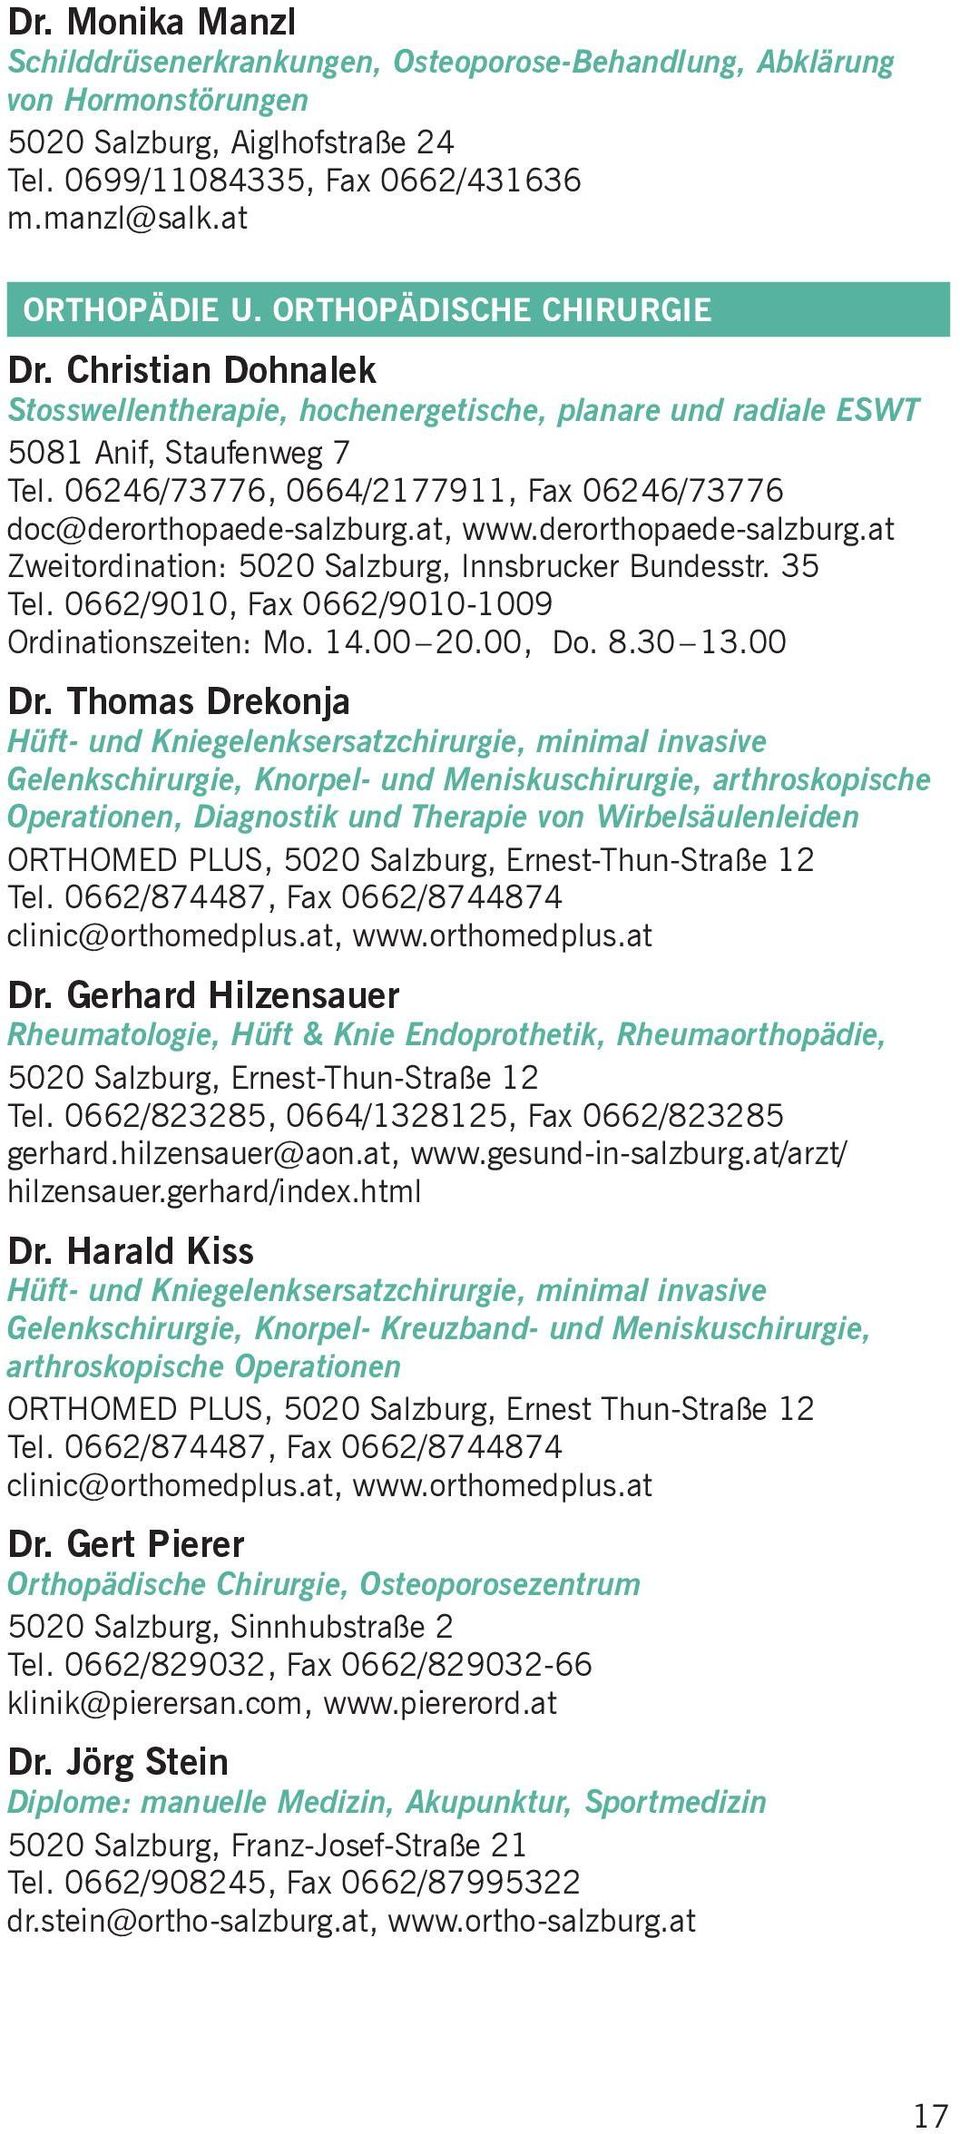 06246/73776, 0664/2177911, Fax 06246/73776 doc@derorthopaede-salzburg.at, www.derorthopaede-salzburg.at Zweitordination: 5020 Salzburg, Innsbrucker Bundesstr. 35 Tel.